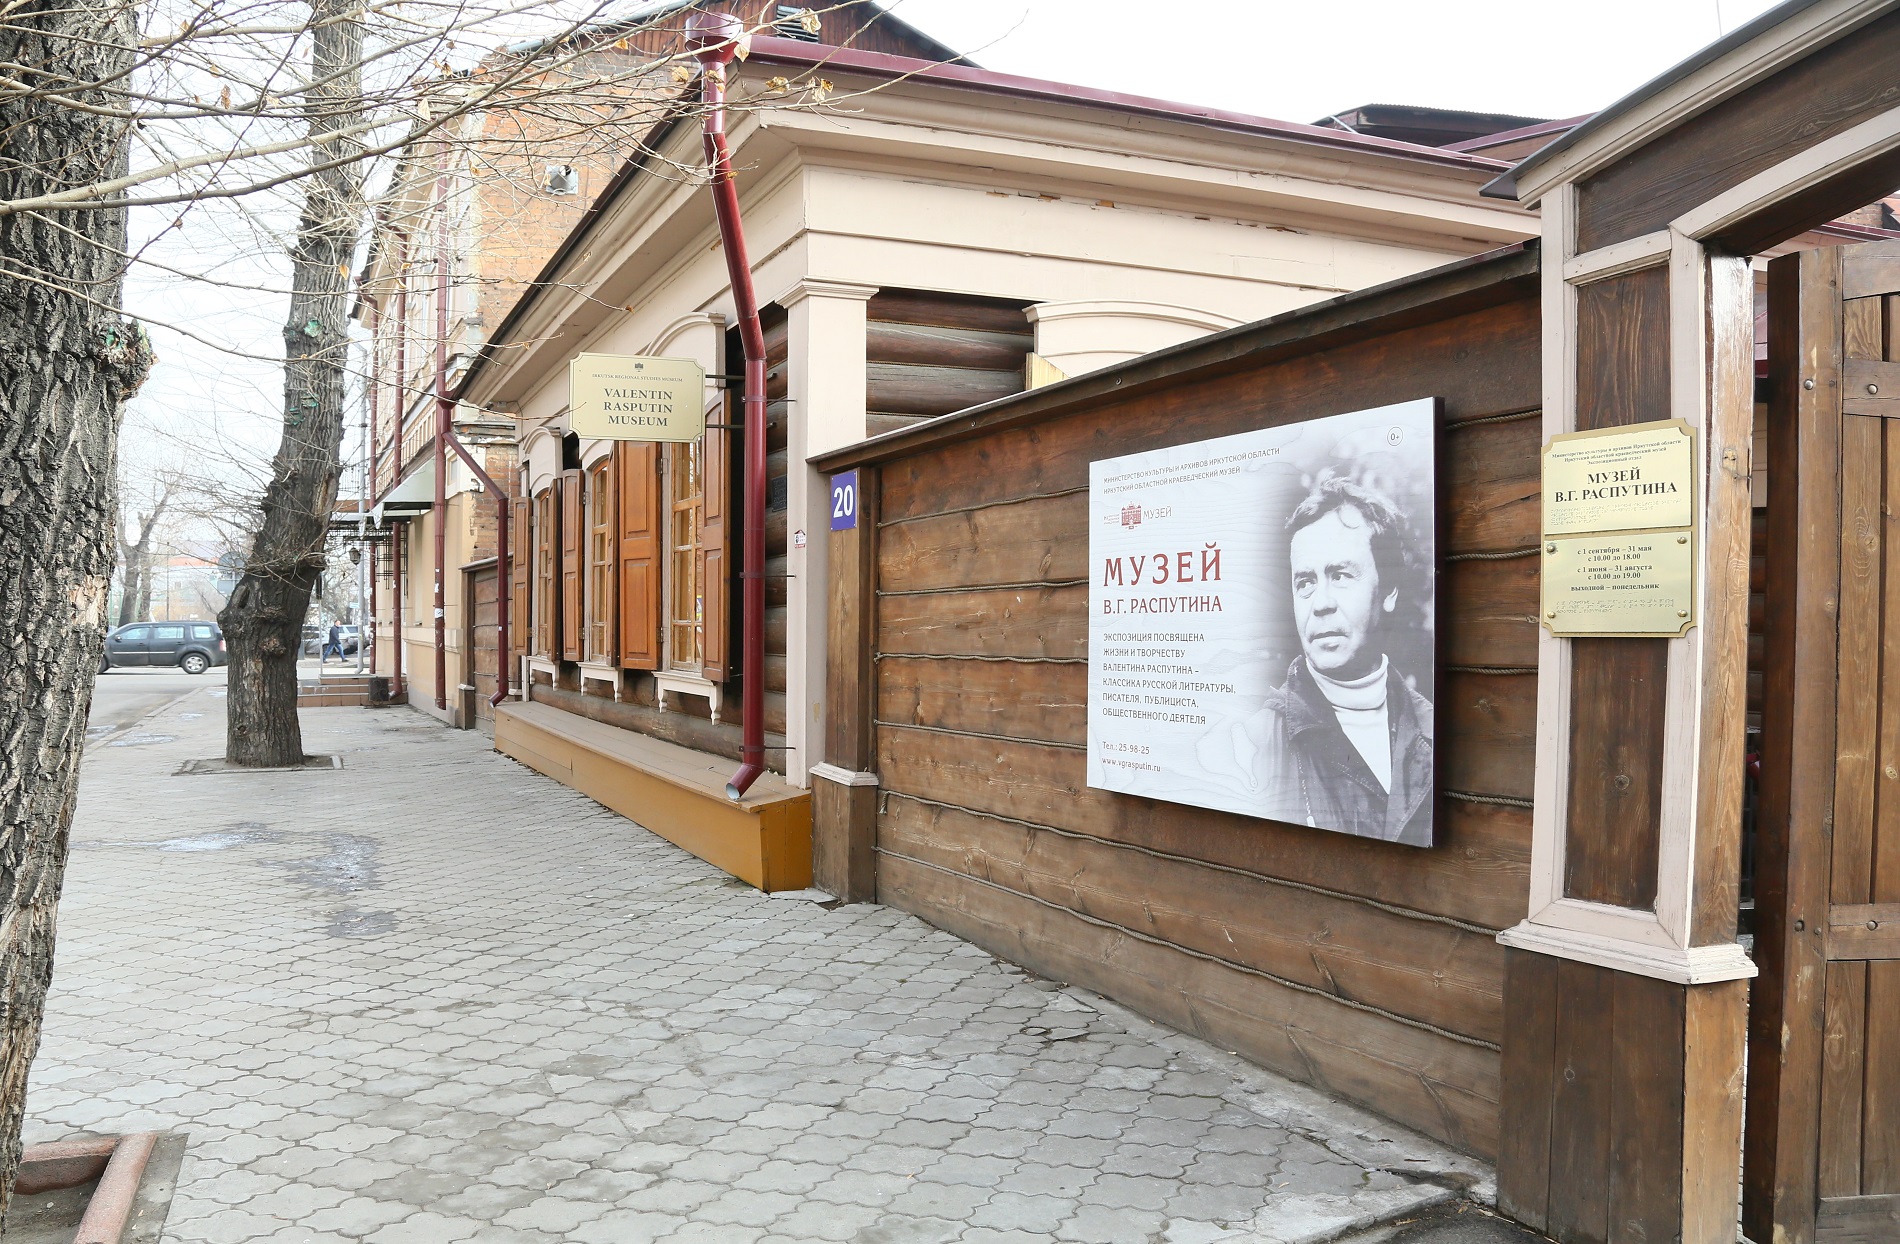 15 марта – День открытых дверей в Музее В.Г. Распутина